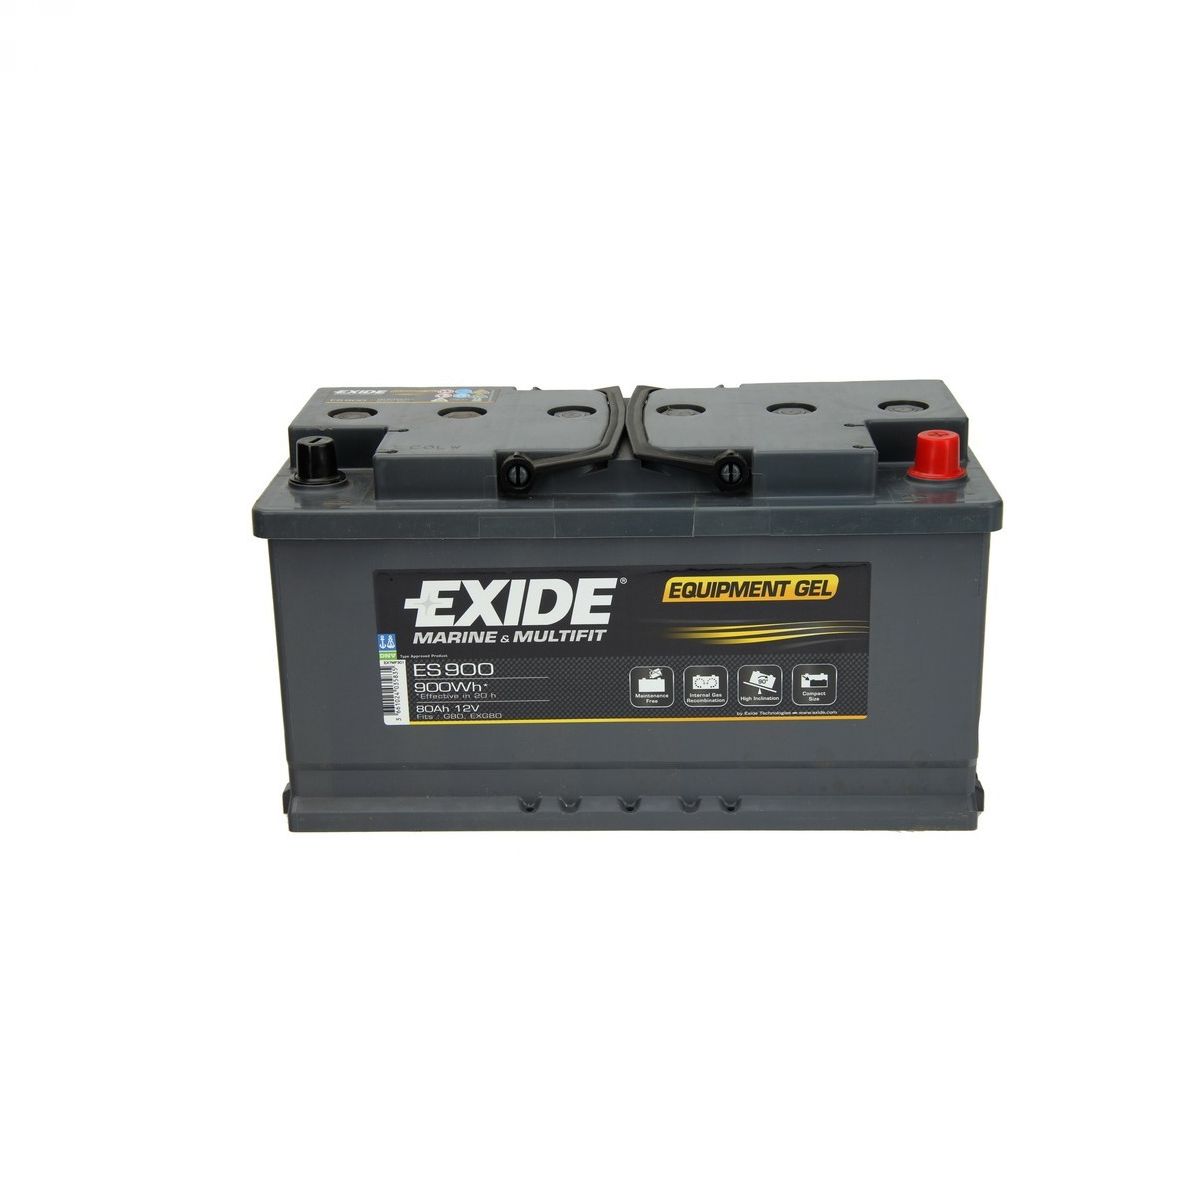 Akumulator EXIDE ES900 Equipment GEL 80Ah